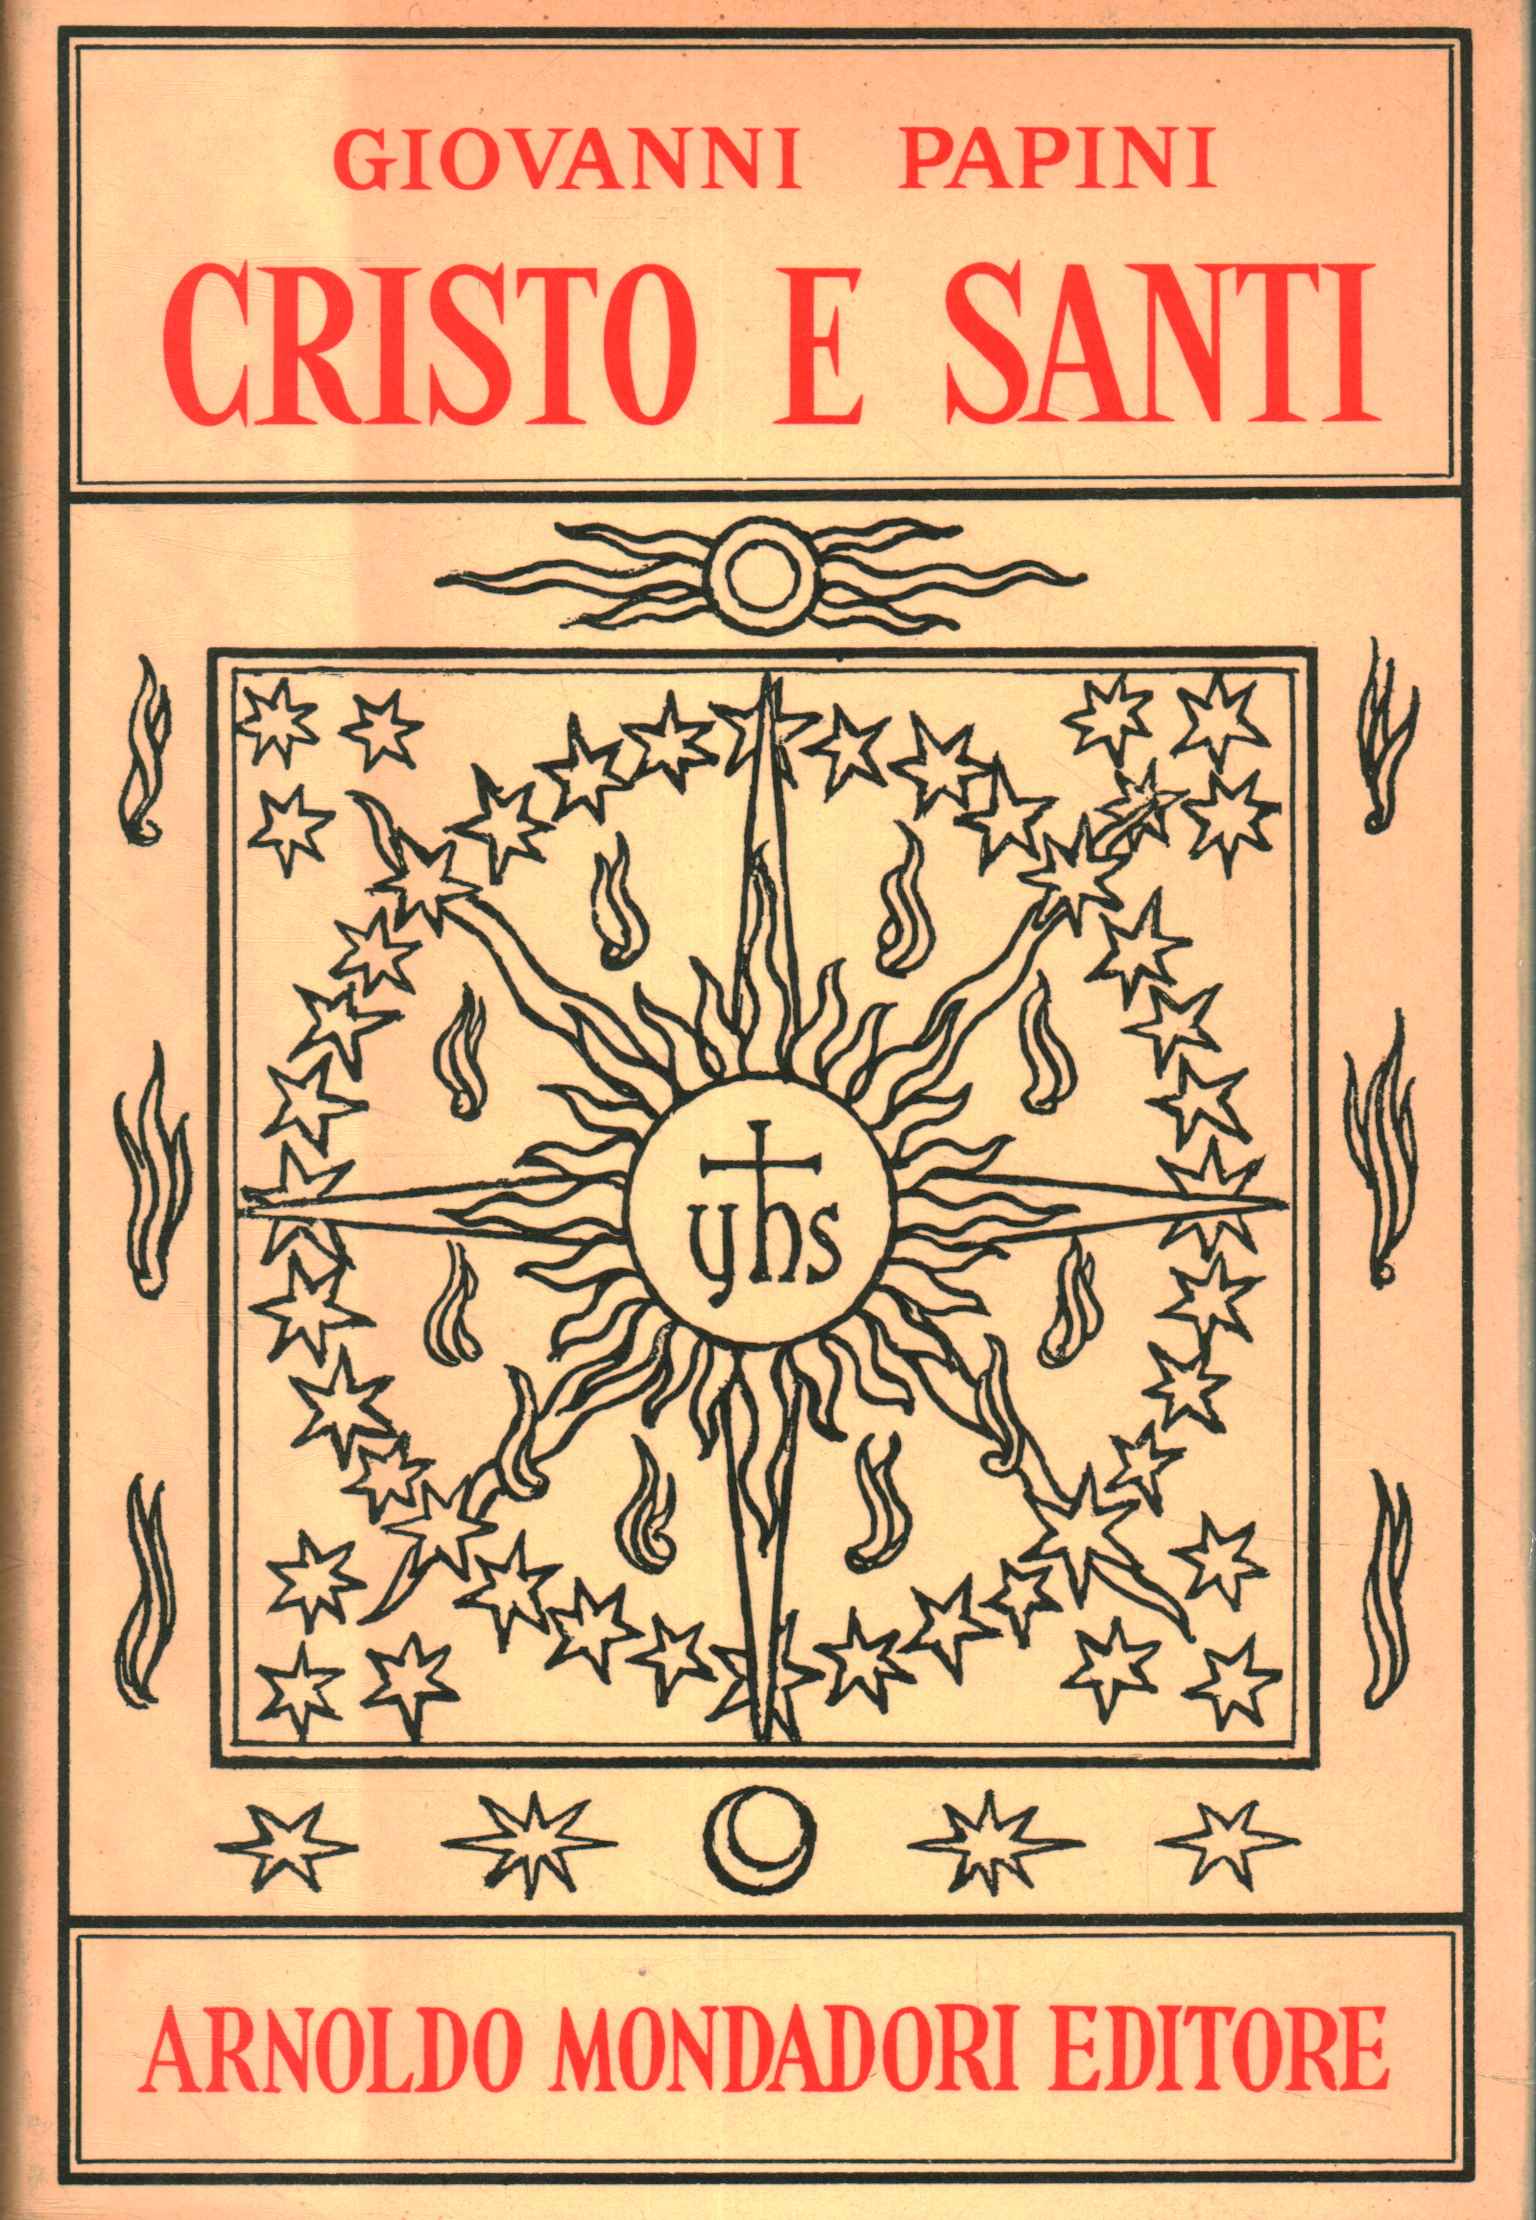 Christ and saints